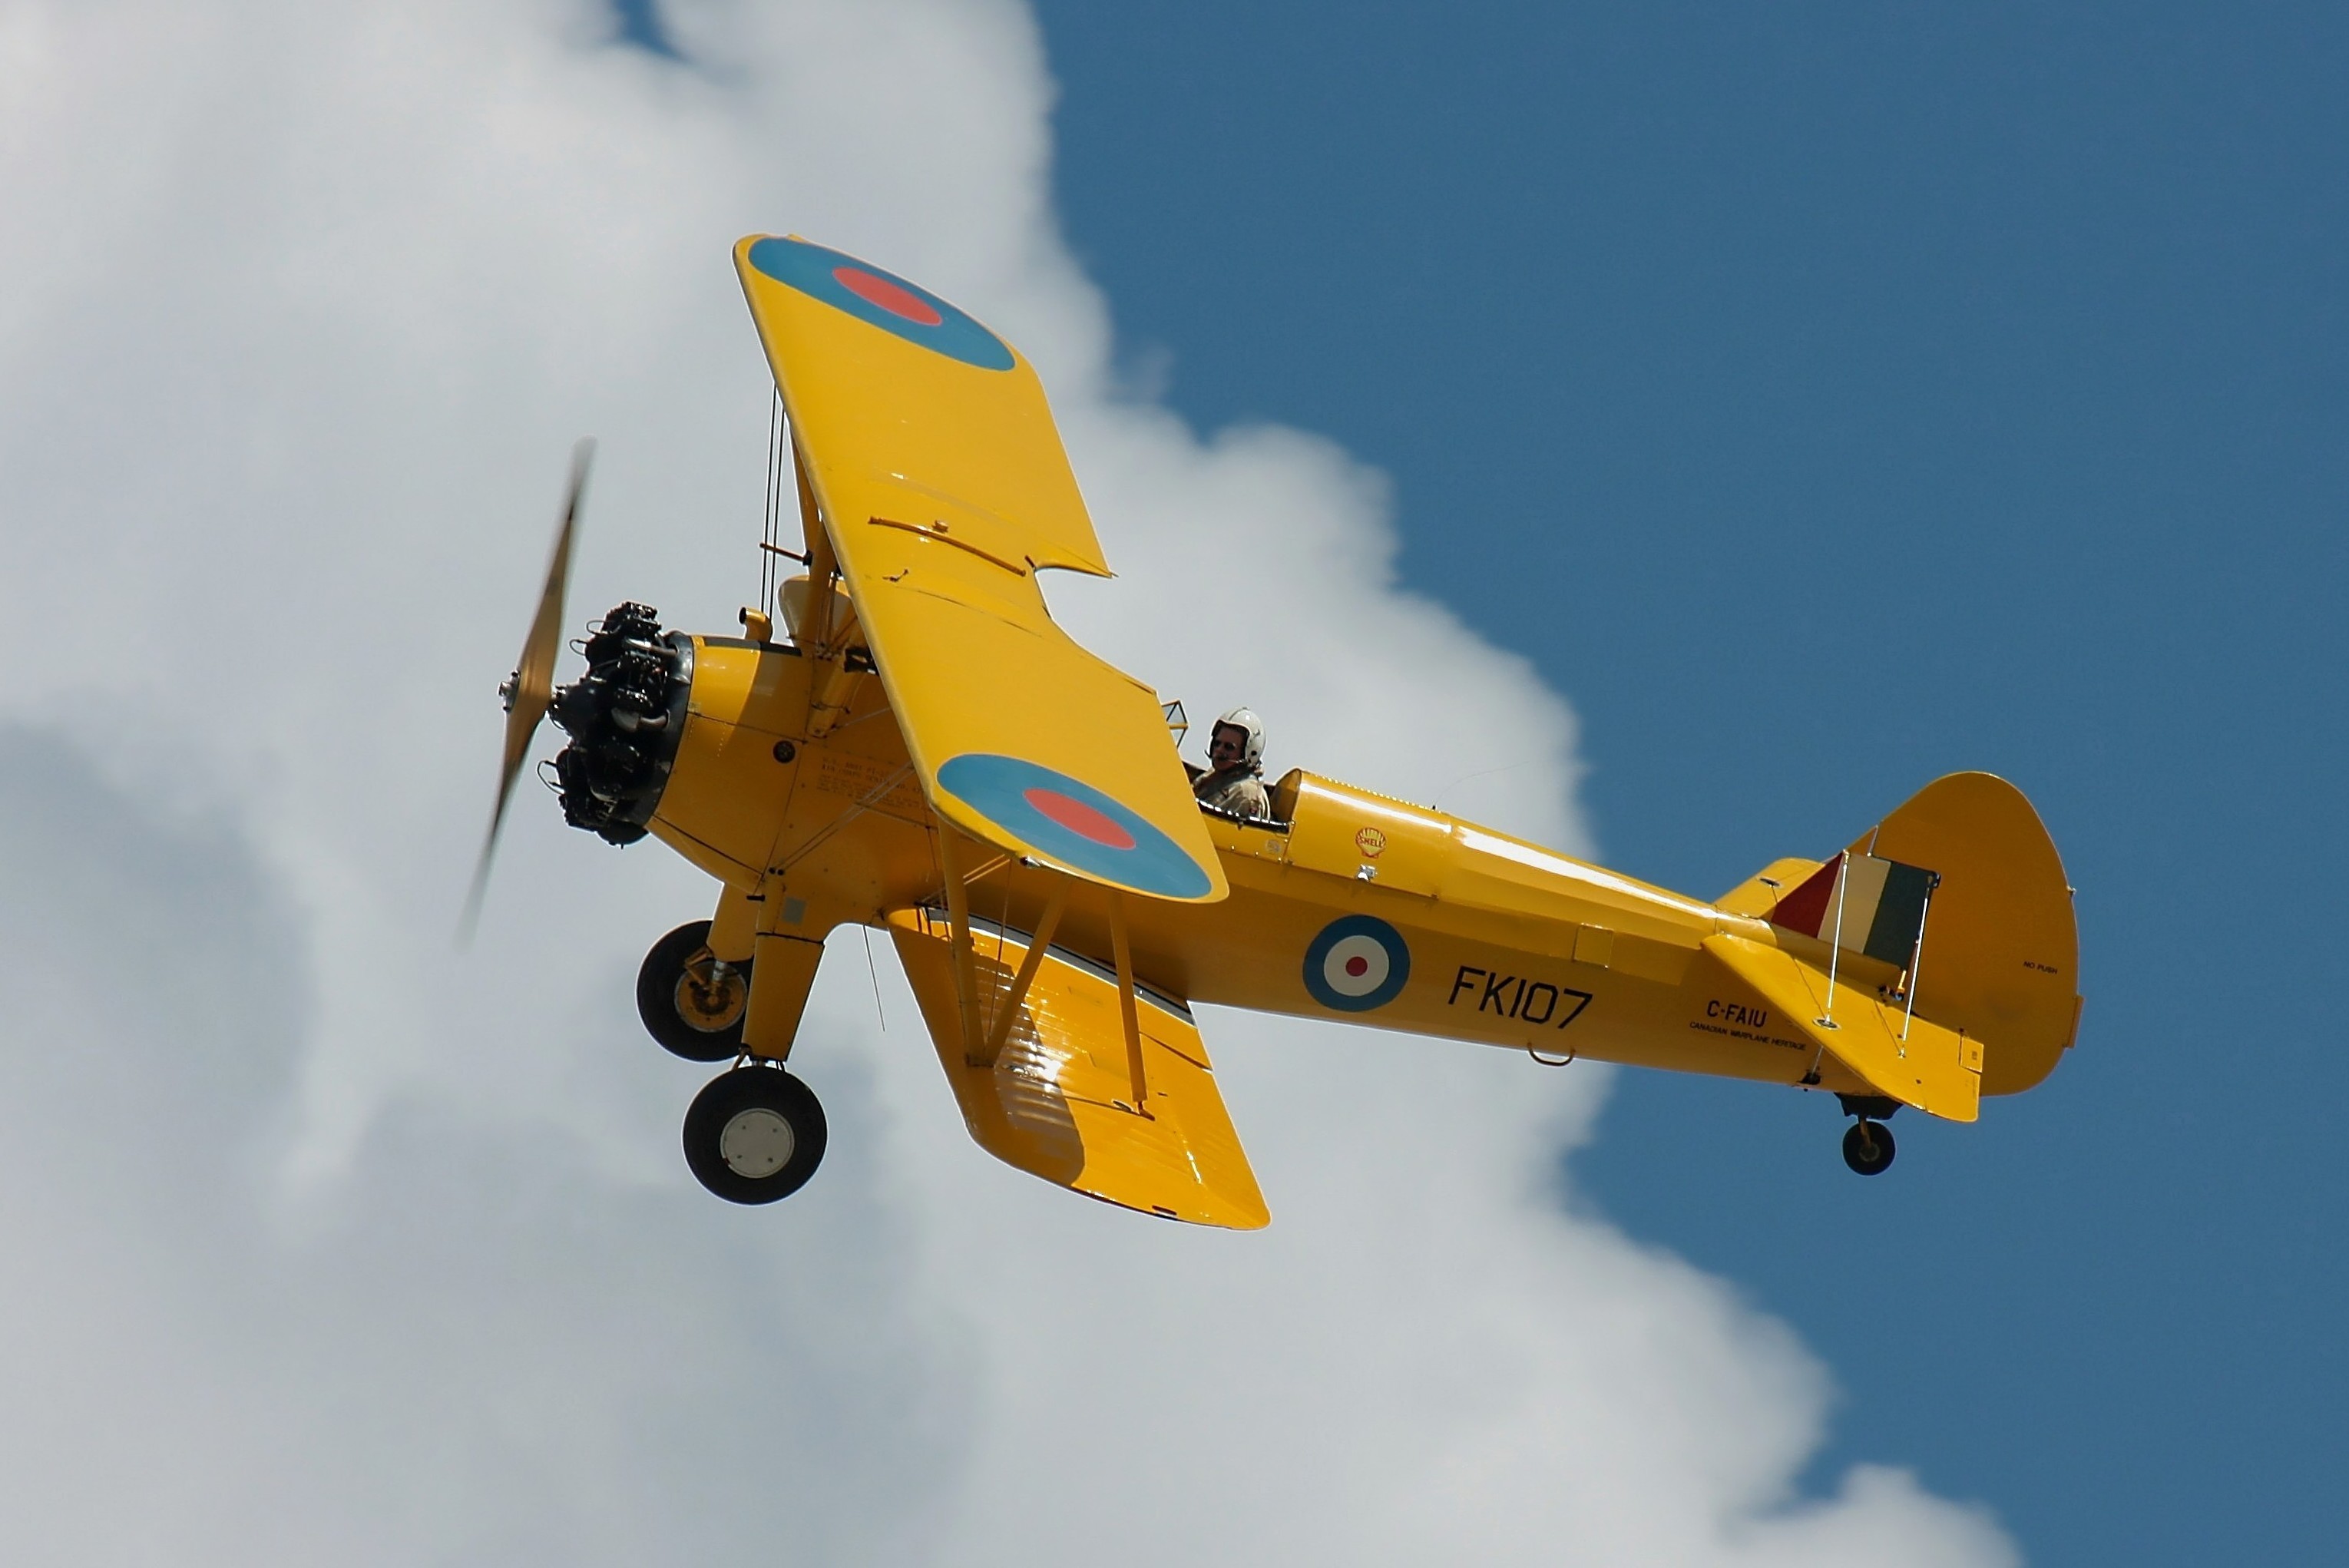 عکس هواپیما عجیب زرد رنگ در زمان قدیم با کیفیت عالی